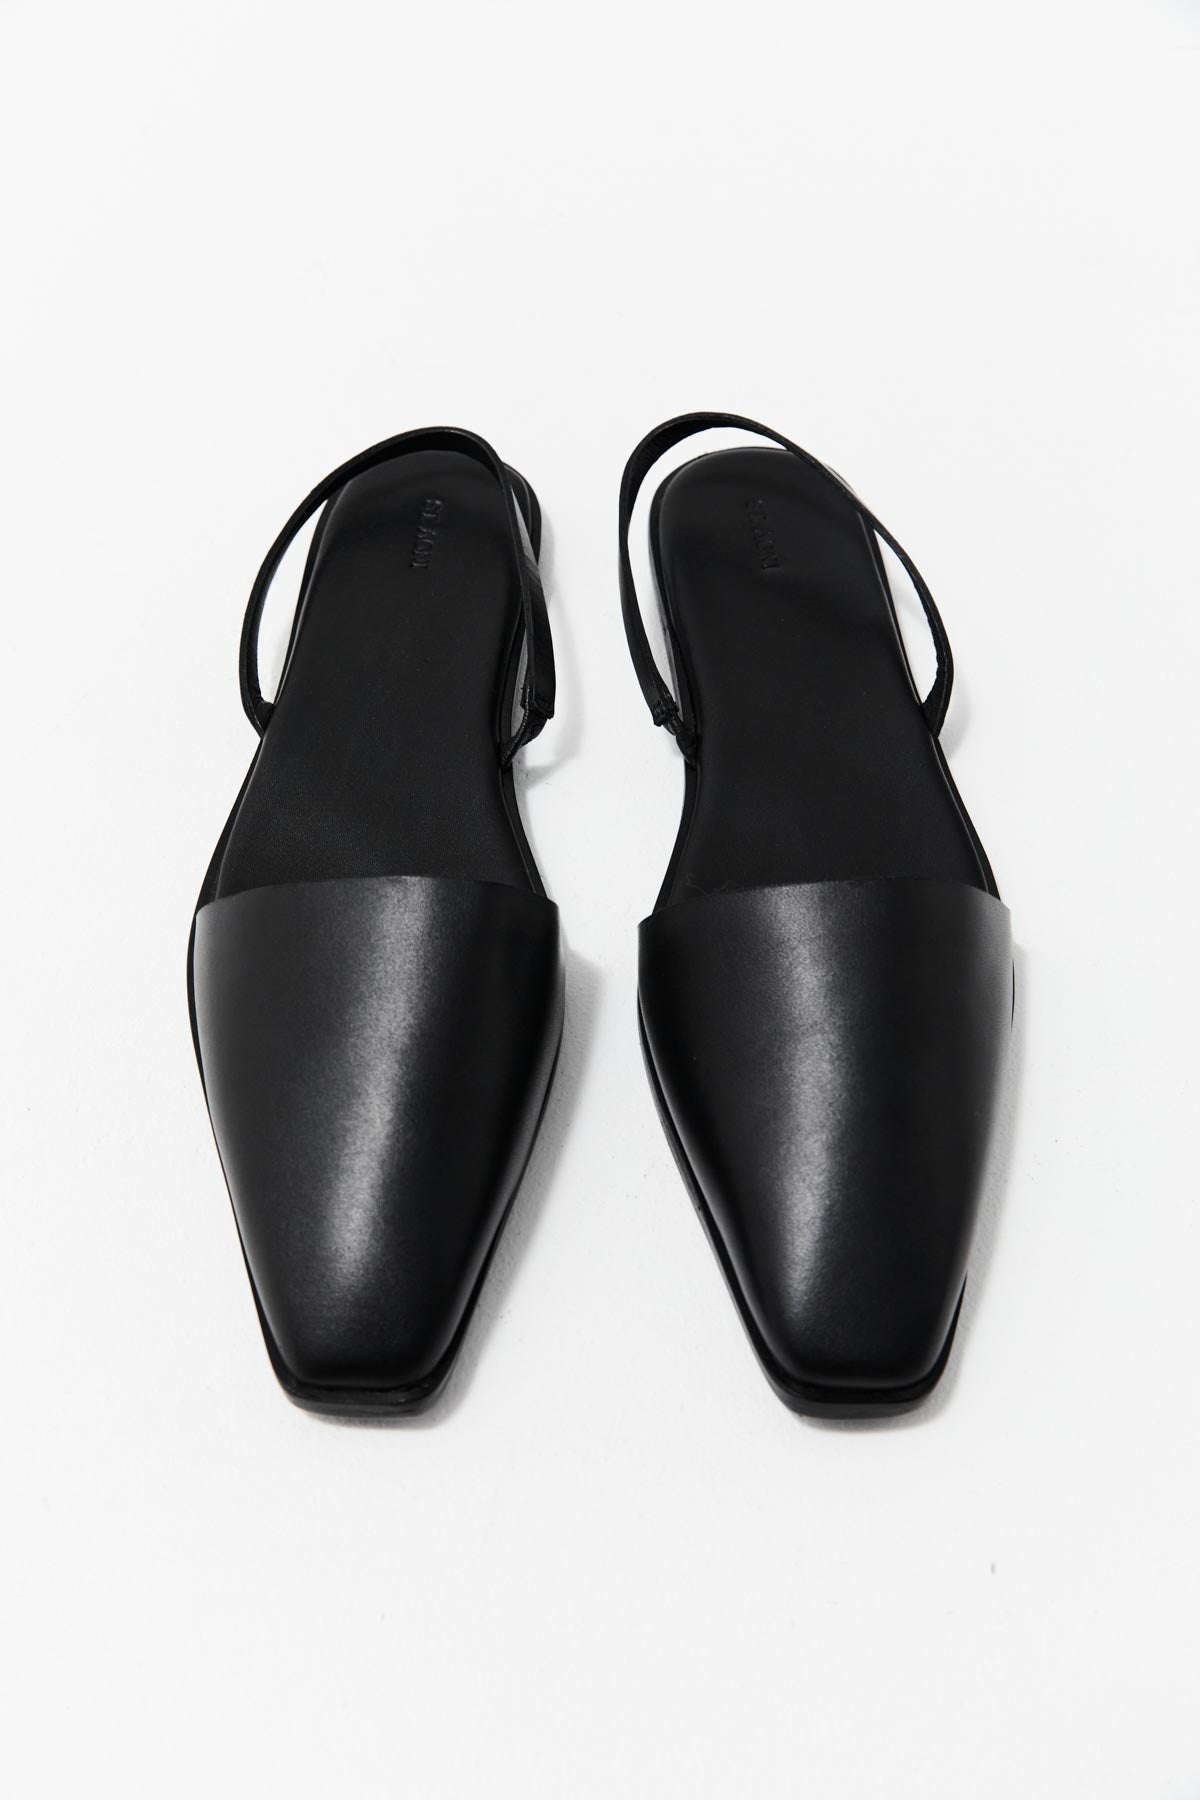 St. Agni | Footwear